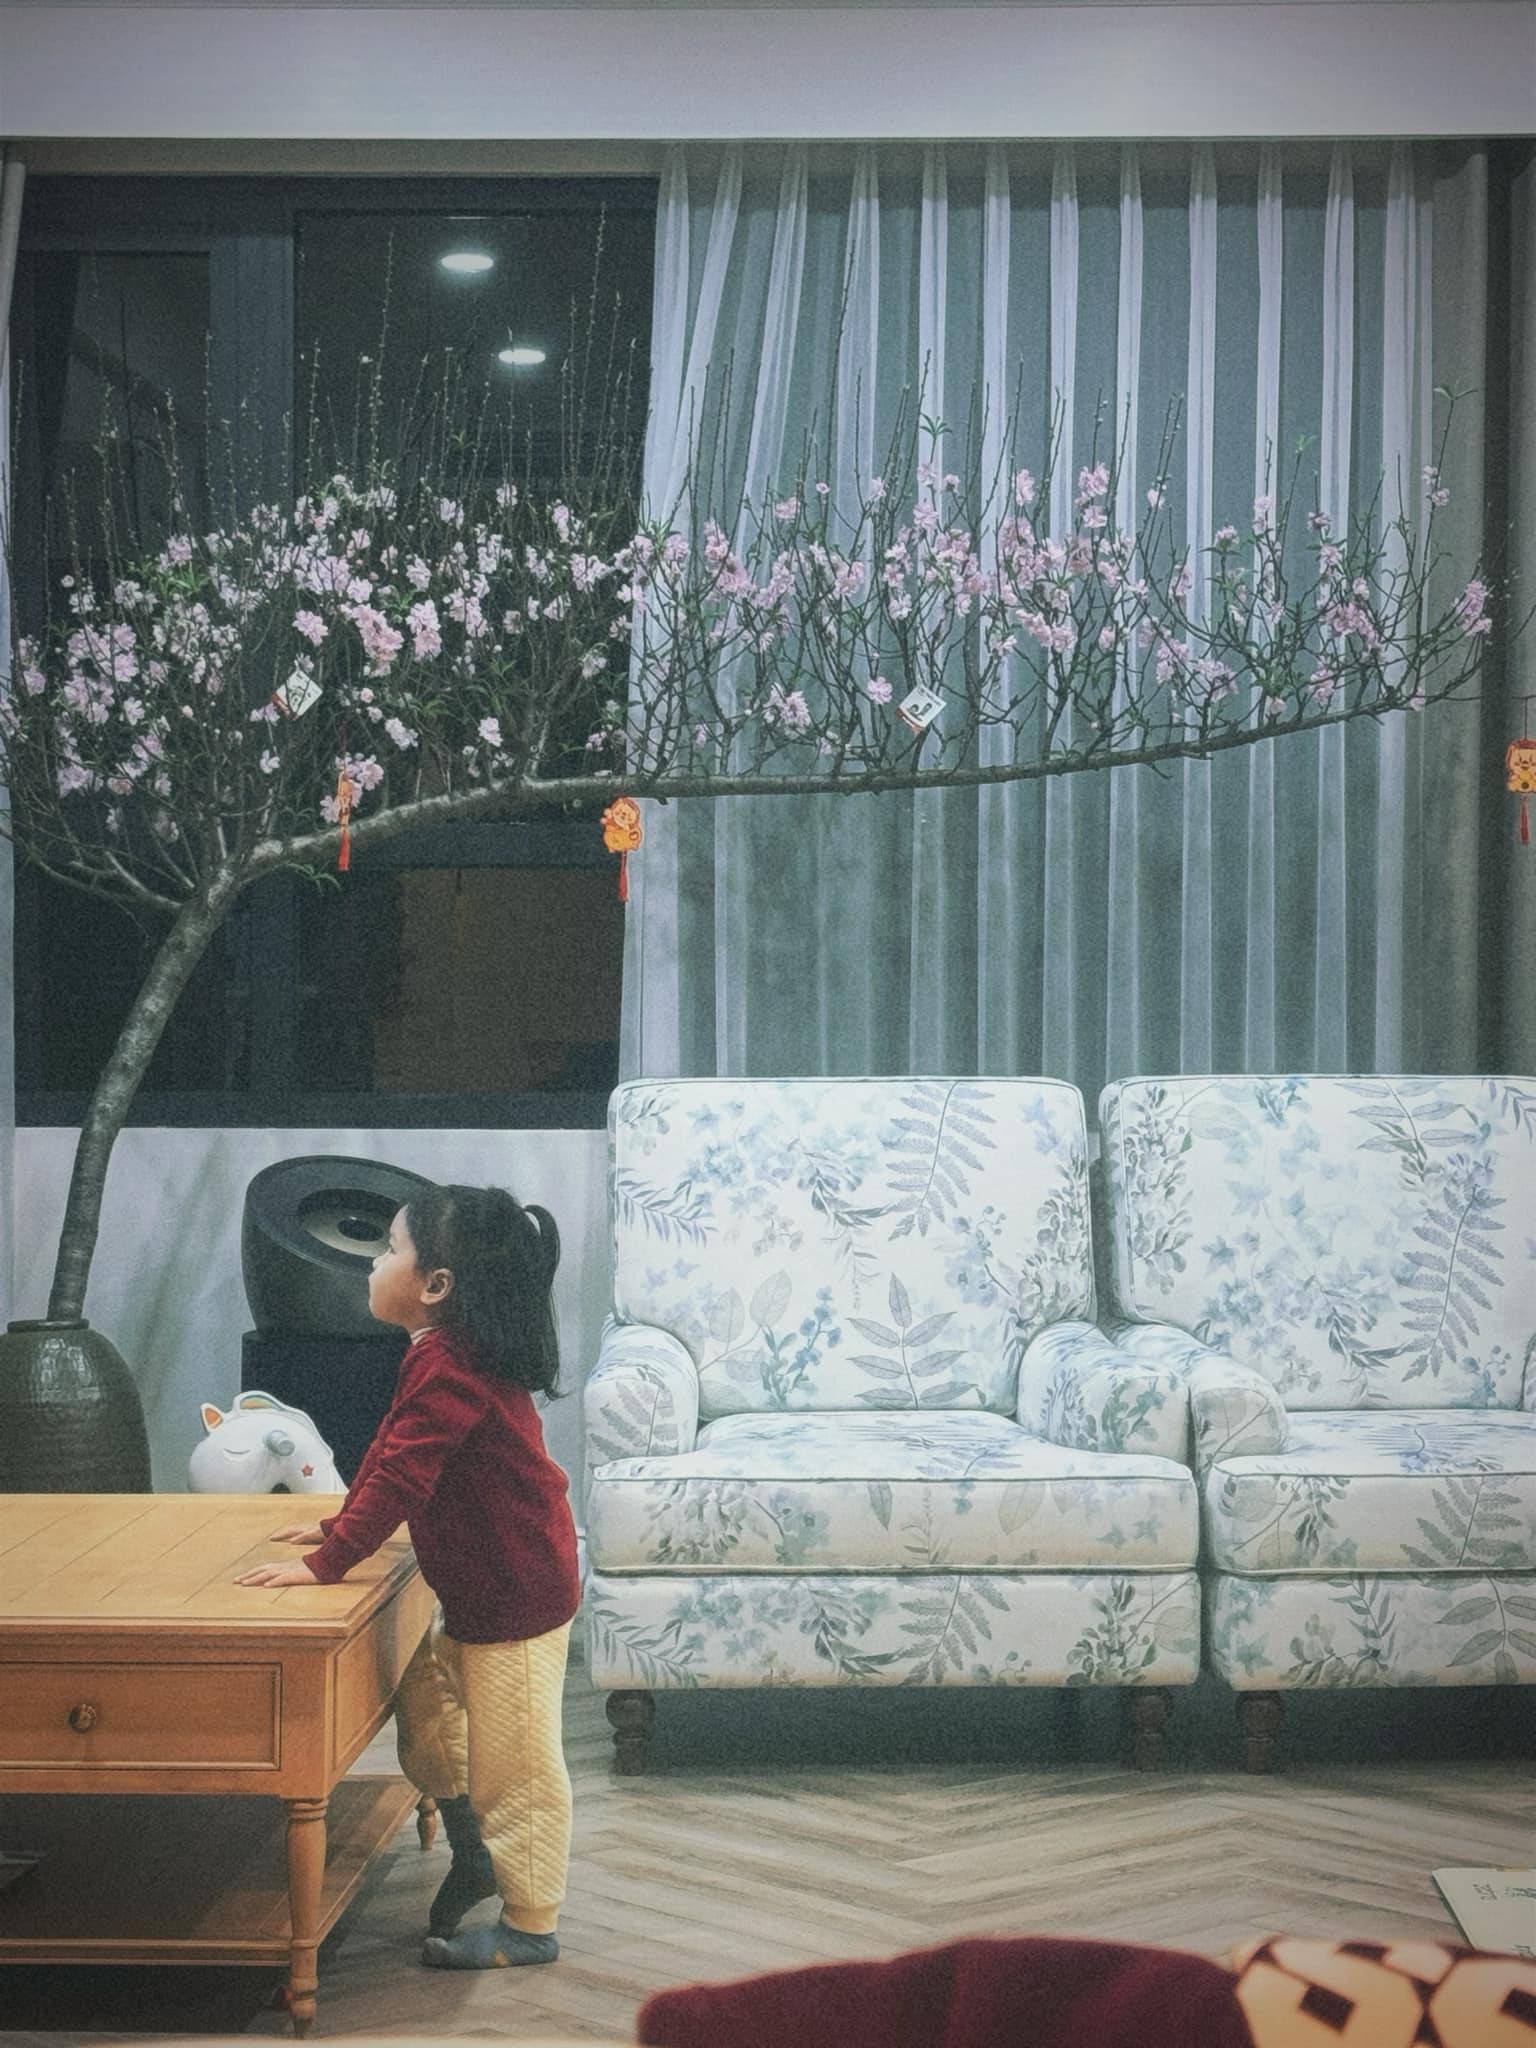 Biệt thự, penthouse của diva Hồng Nhung, người mẫu Thúy Hạnh ngày cận Tết - Ảnh 13.